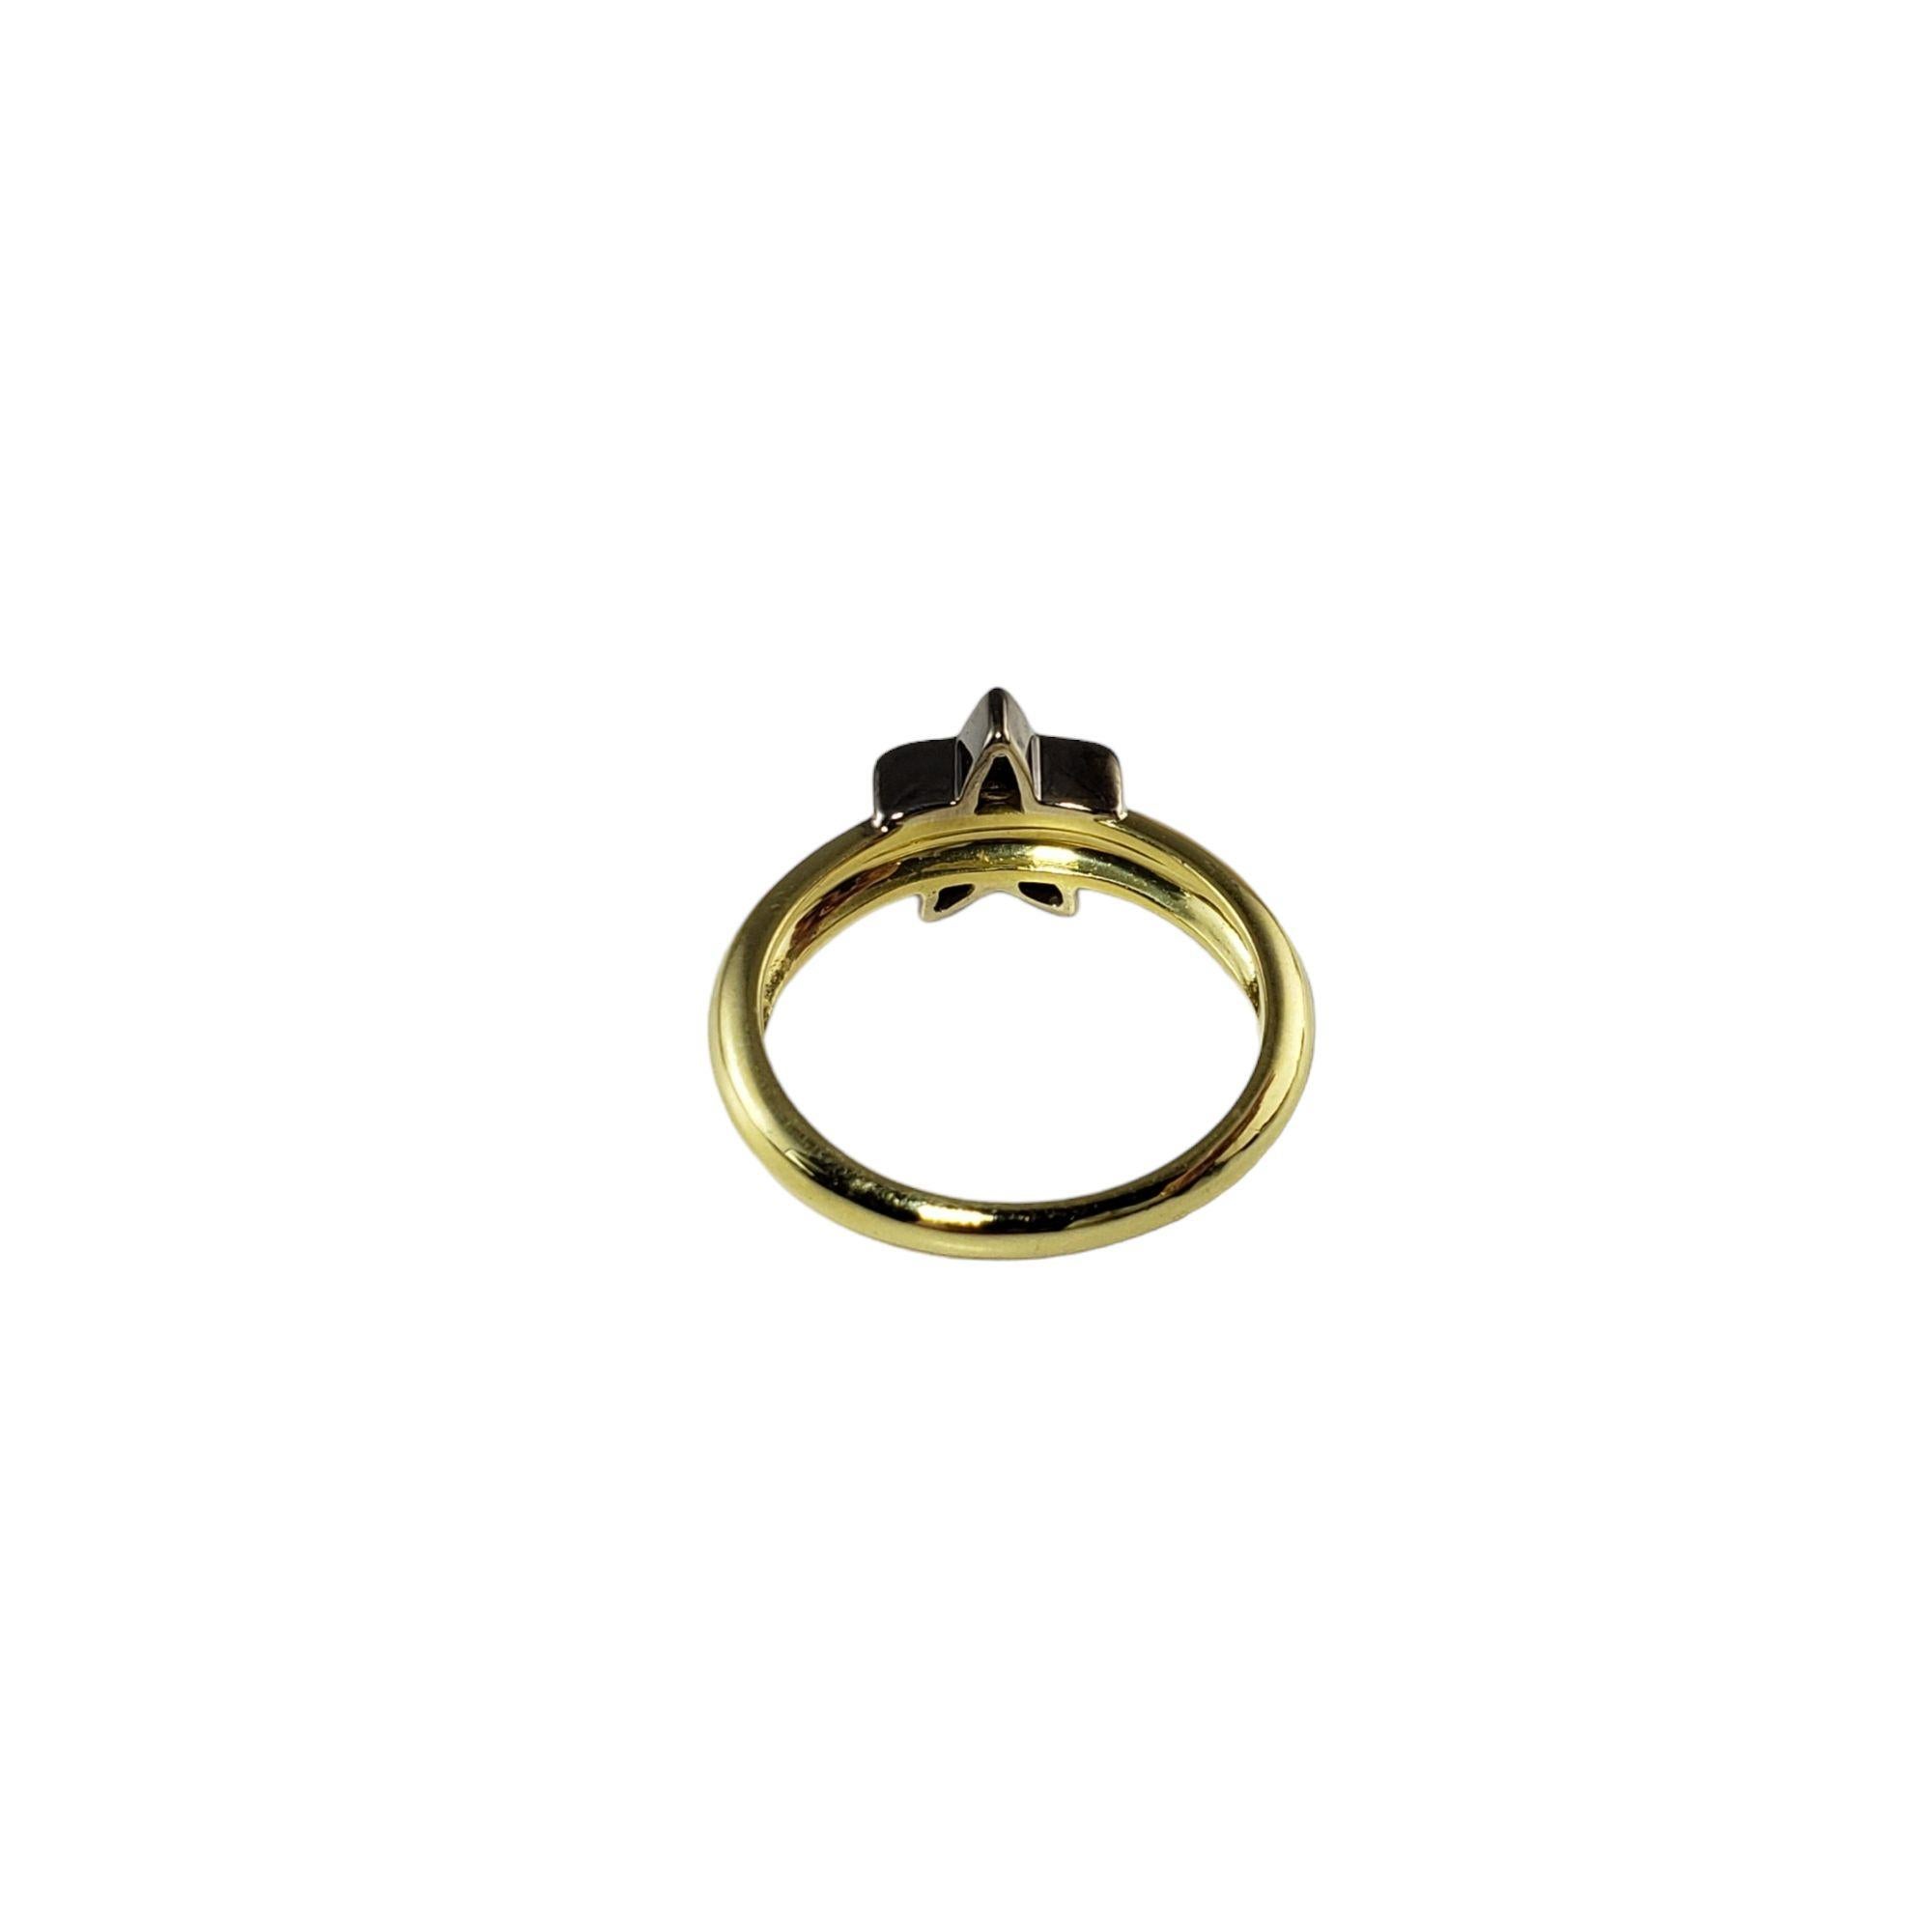 Vintage 18 Karat Weißgold und Diamant Stern Ring Größe 6,5

Dieser funkelnde Sternring ist mit sechs runden Diamanten im Brillantschliff besetzt und in klassisches 14-karätiges Gelbgold gefasst. Breite: 9 mm. Schaft: 3 mm.

Ungefähres Gesamtgewicht